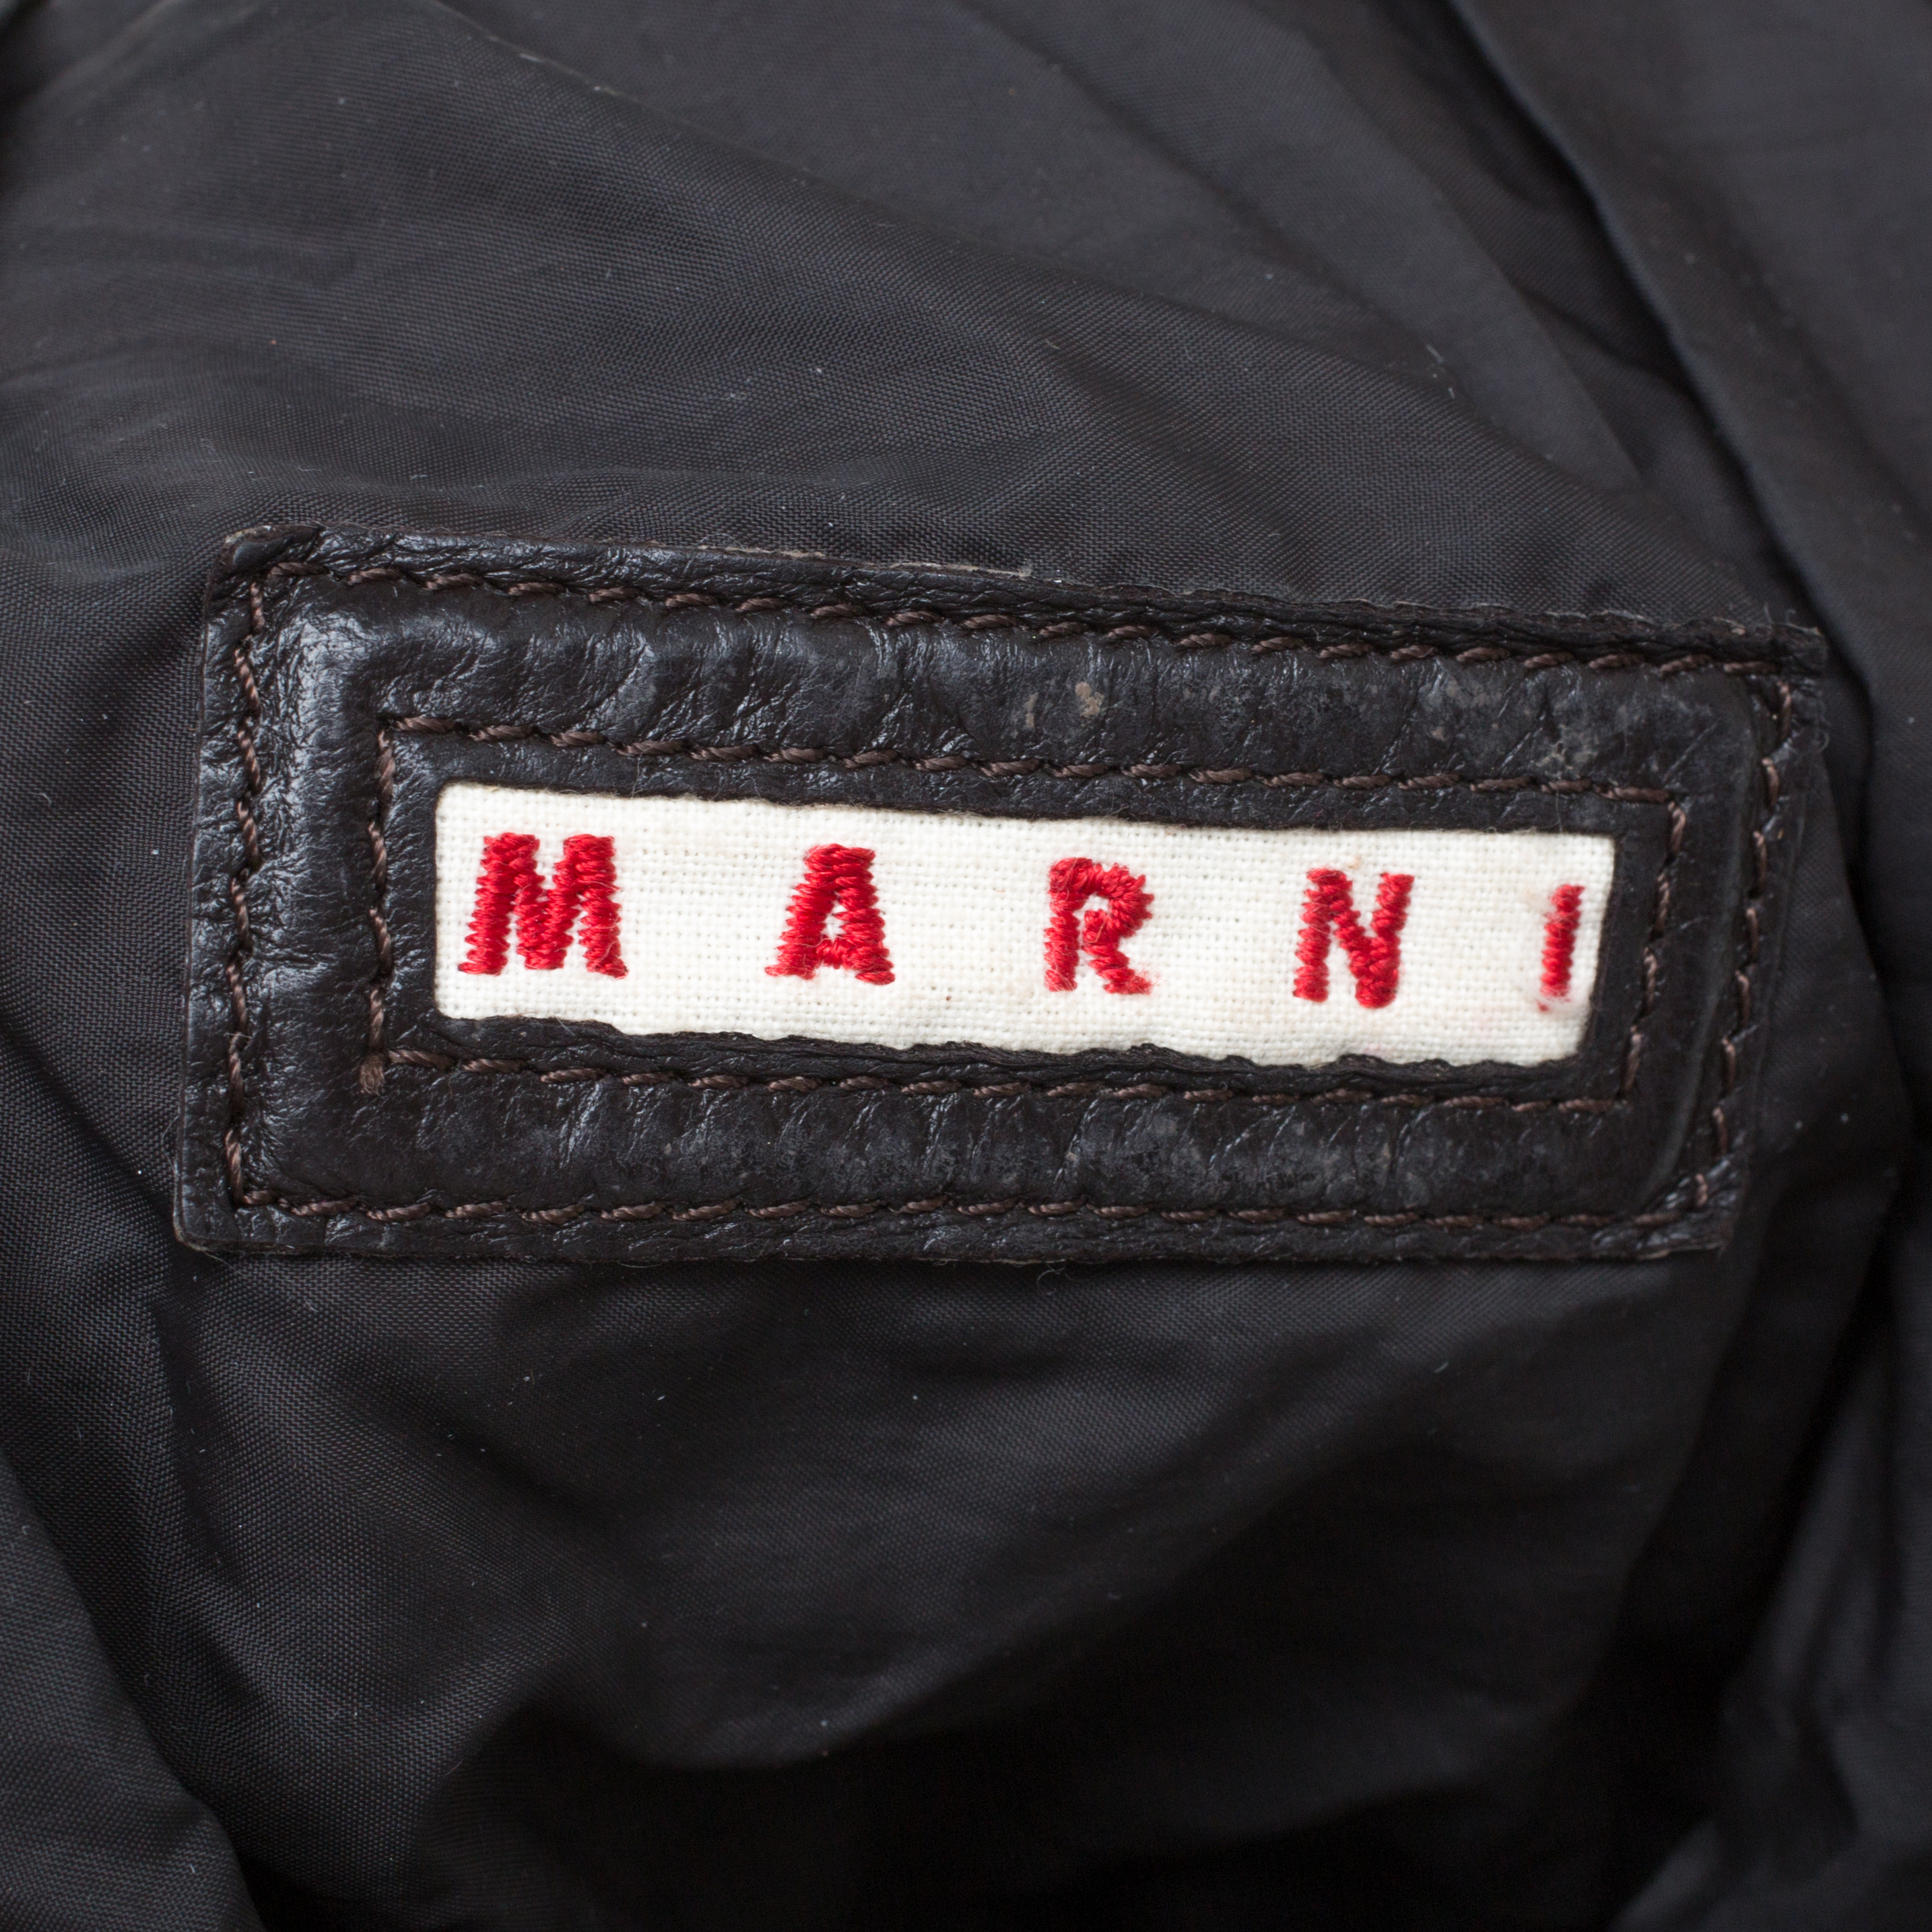 Marni Dark Grey Soft Leather Frame Flap Shoulder Bag